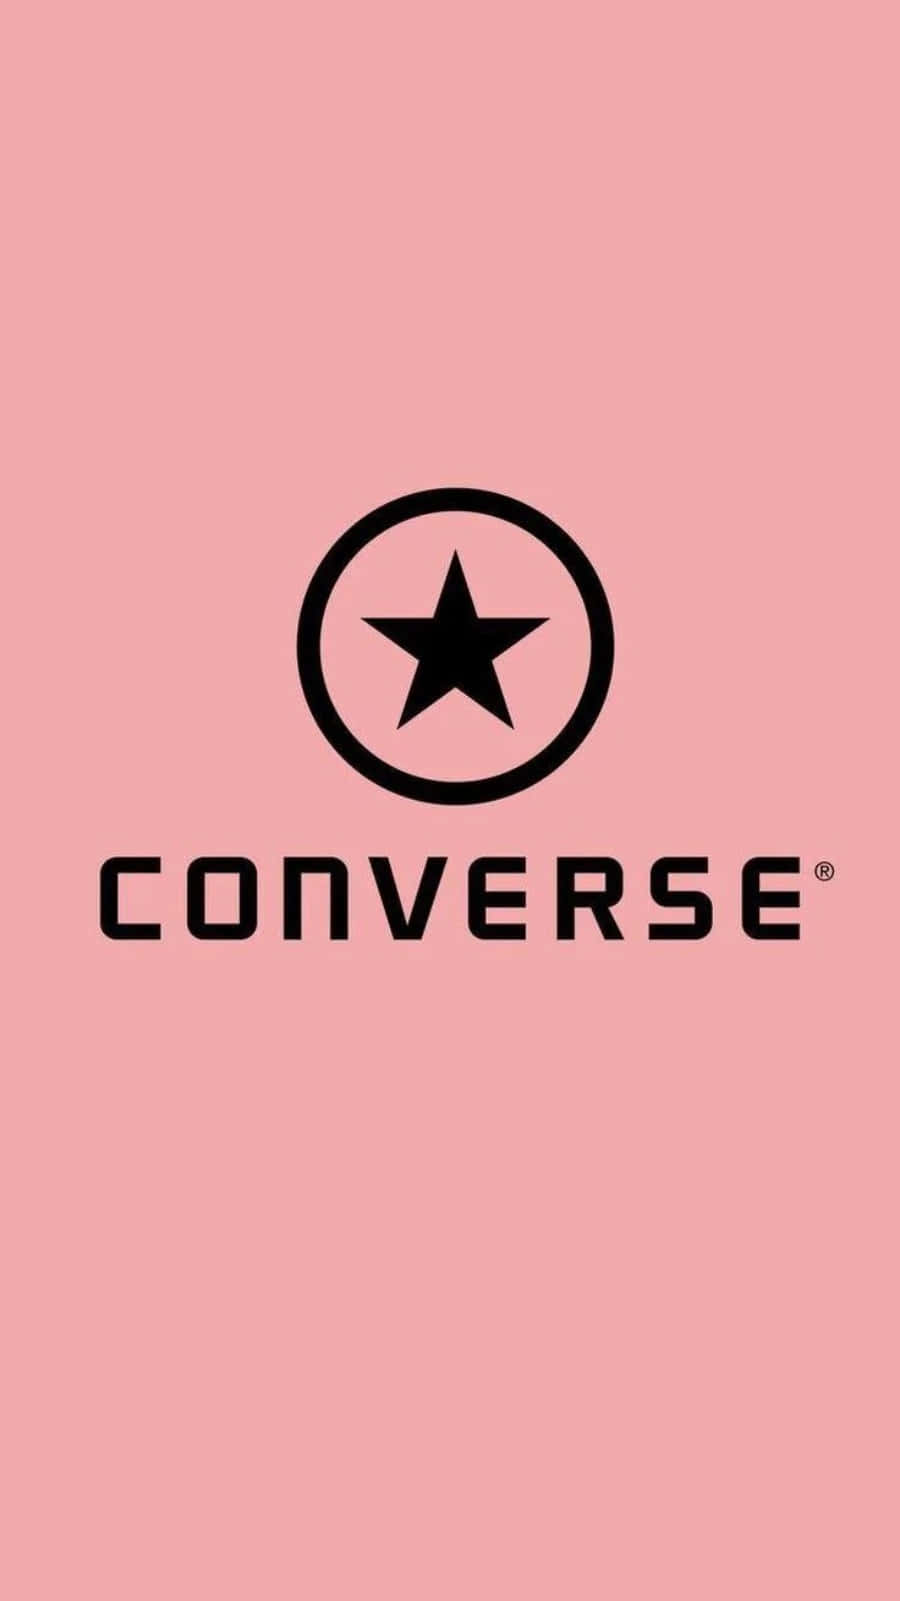 Klassischesdesign, Ikonisches Logo: Die Marke Converse